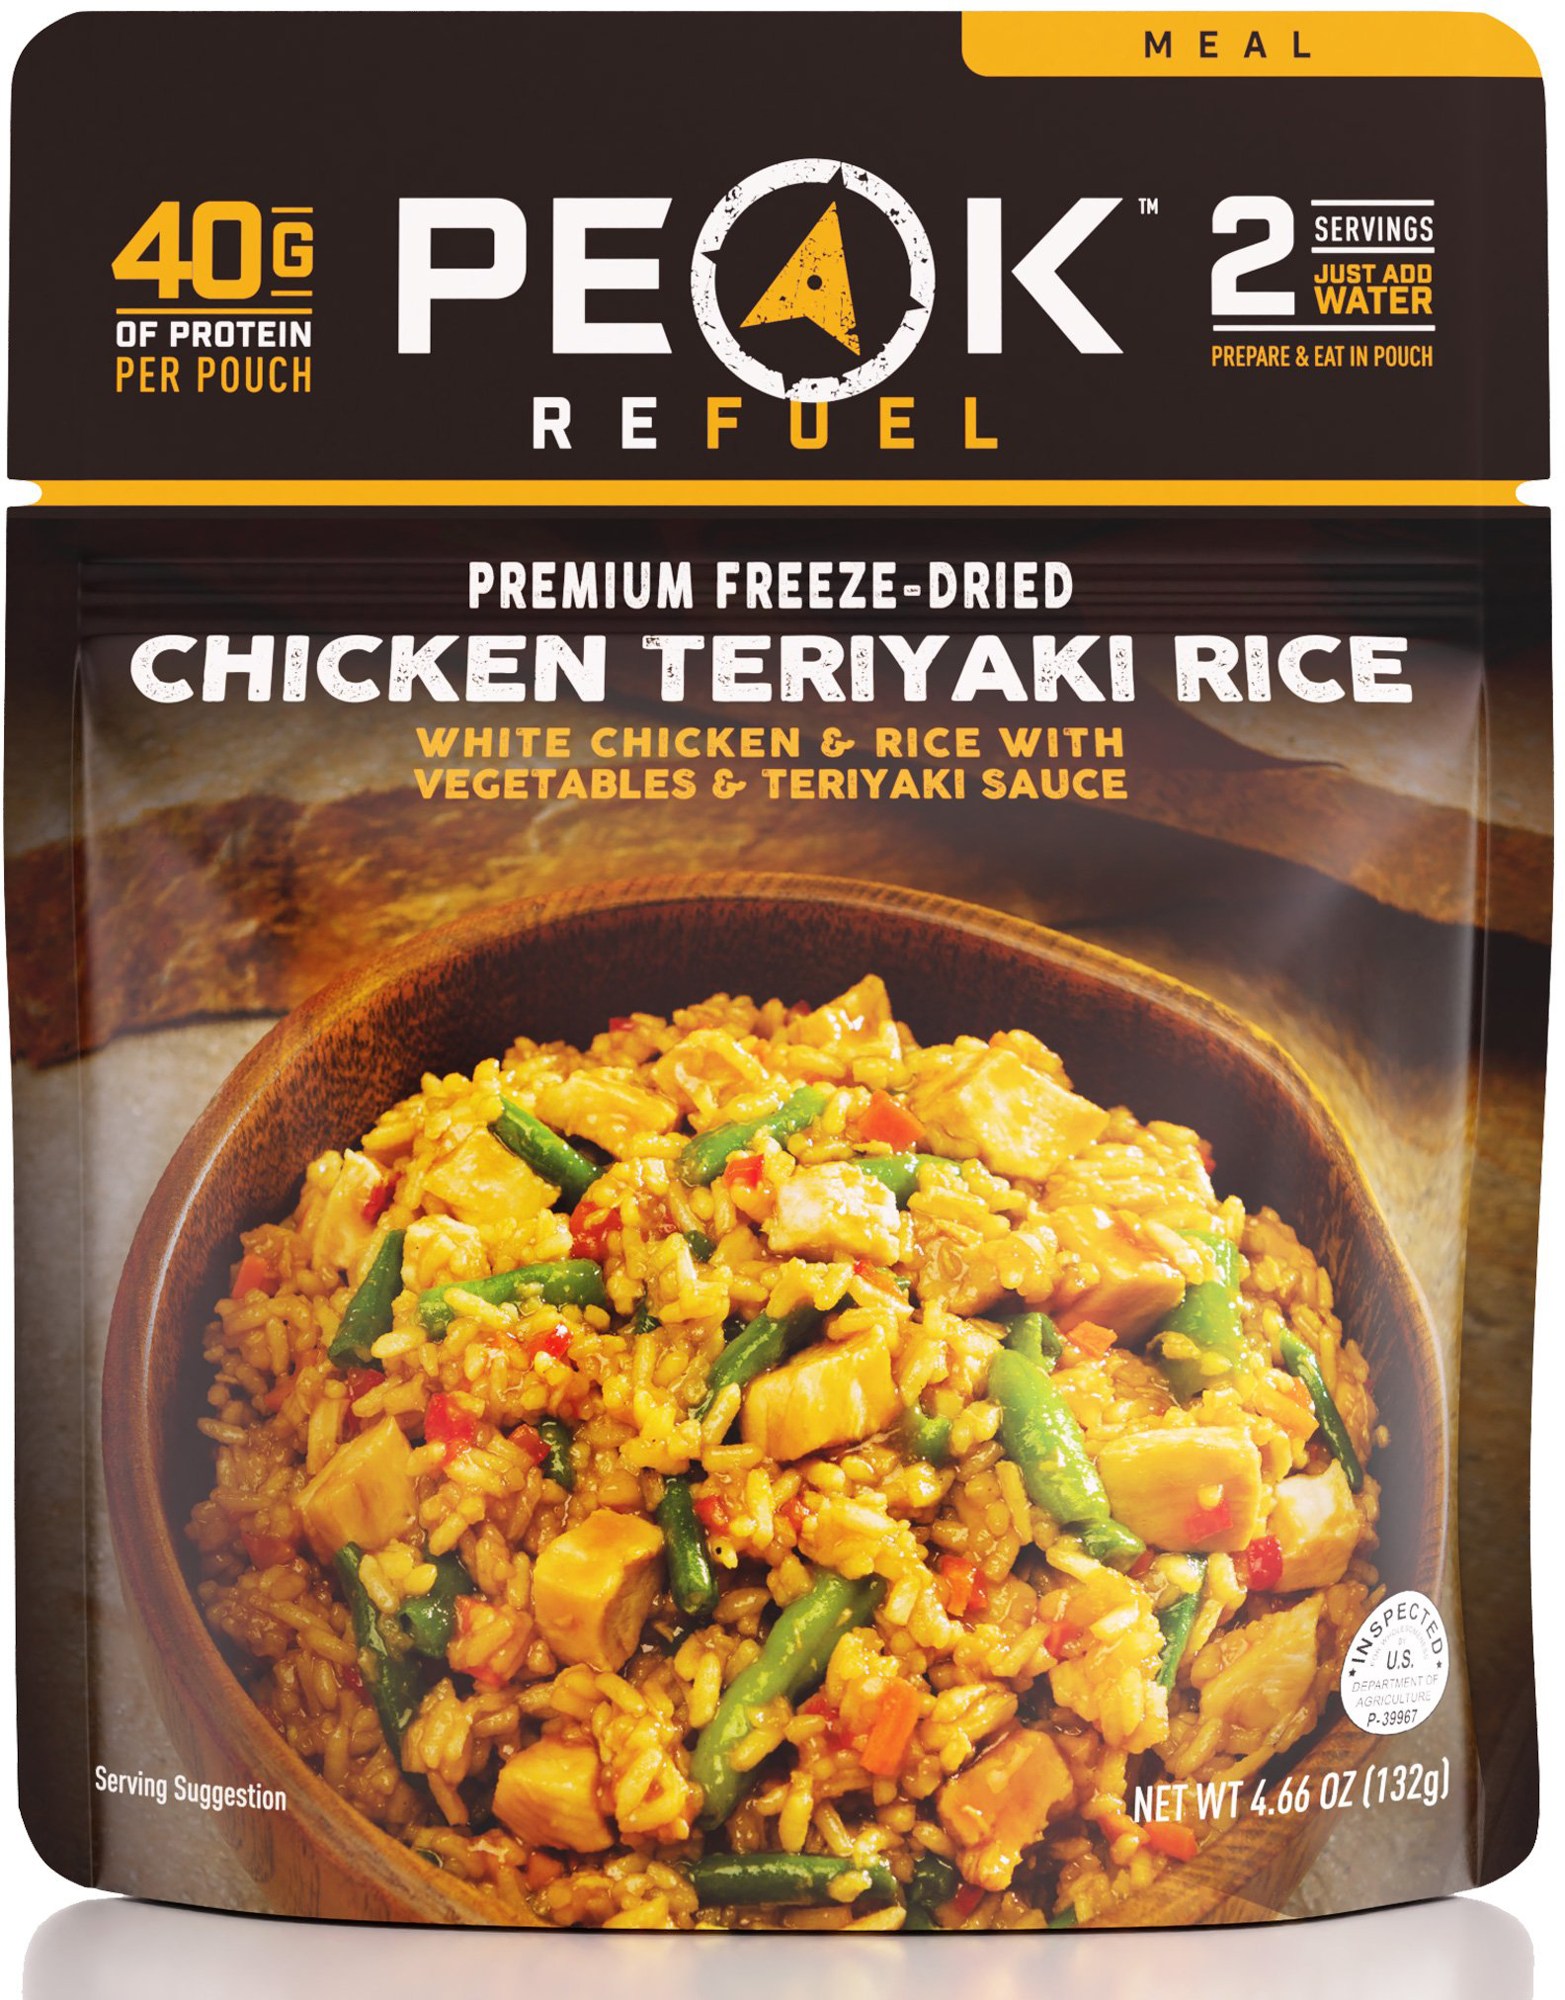 Курица с рисом Терияки – 2 порции PEAK REFUEL рис вкусно и густо с овощами 176 г